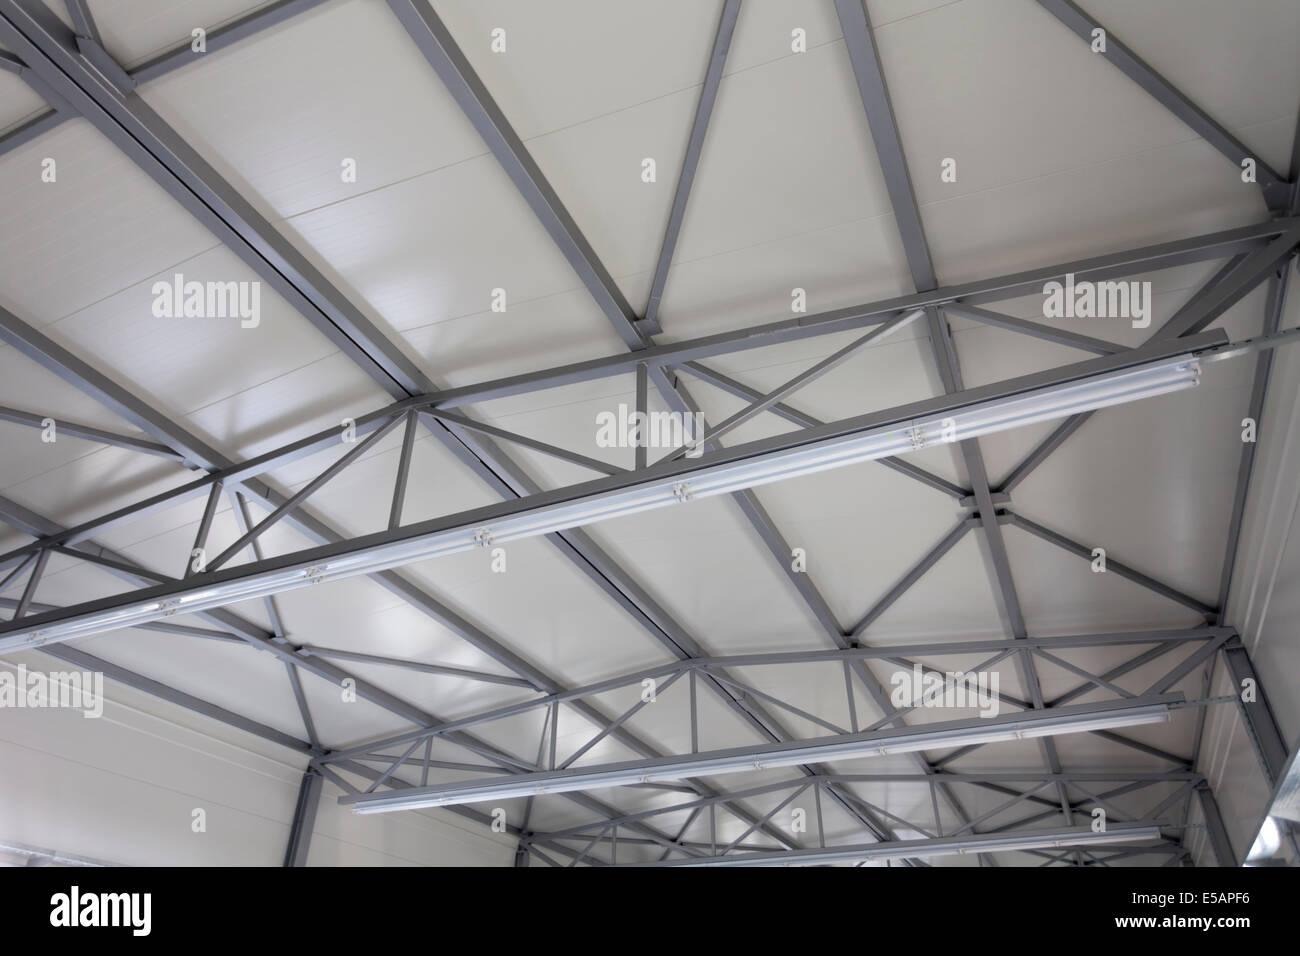 roof steel construction indoor Stock Photo